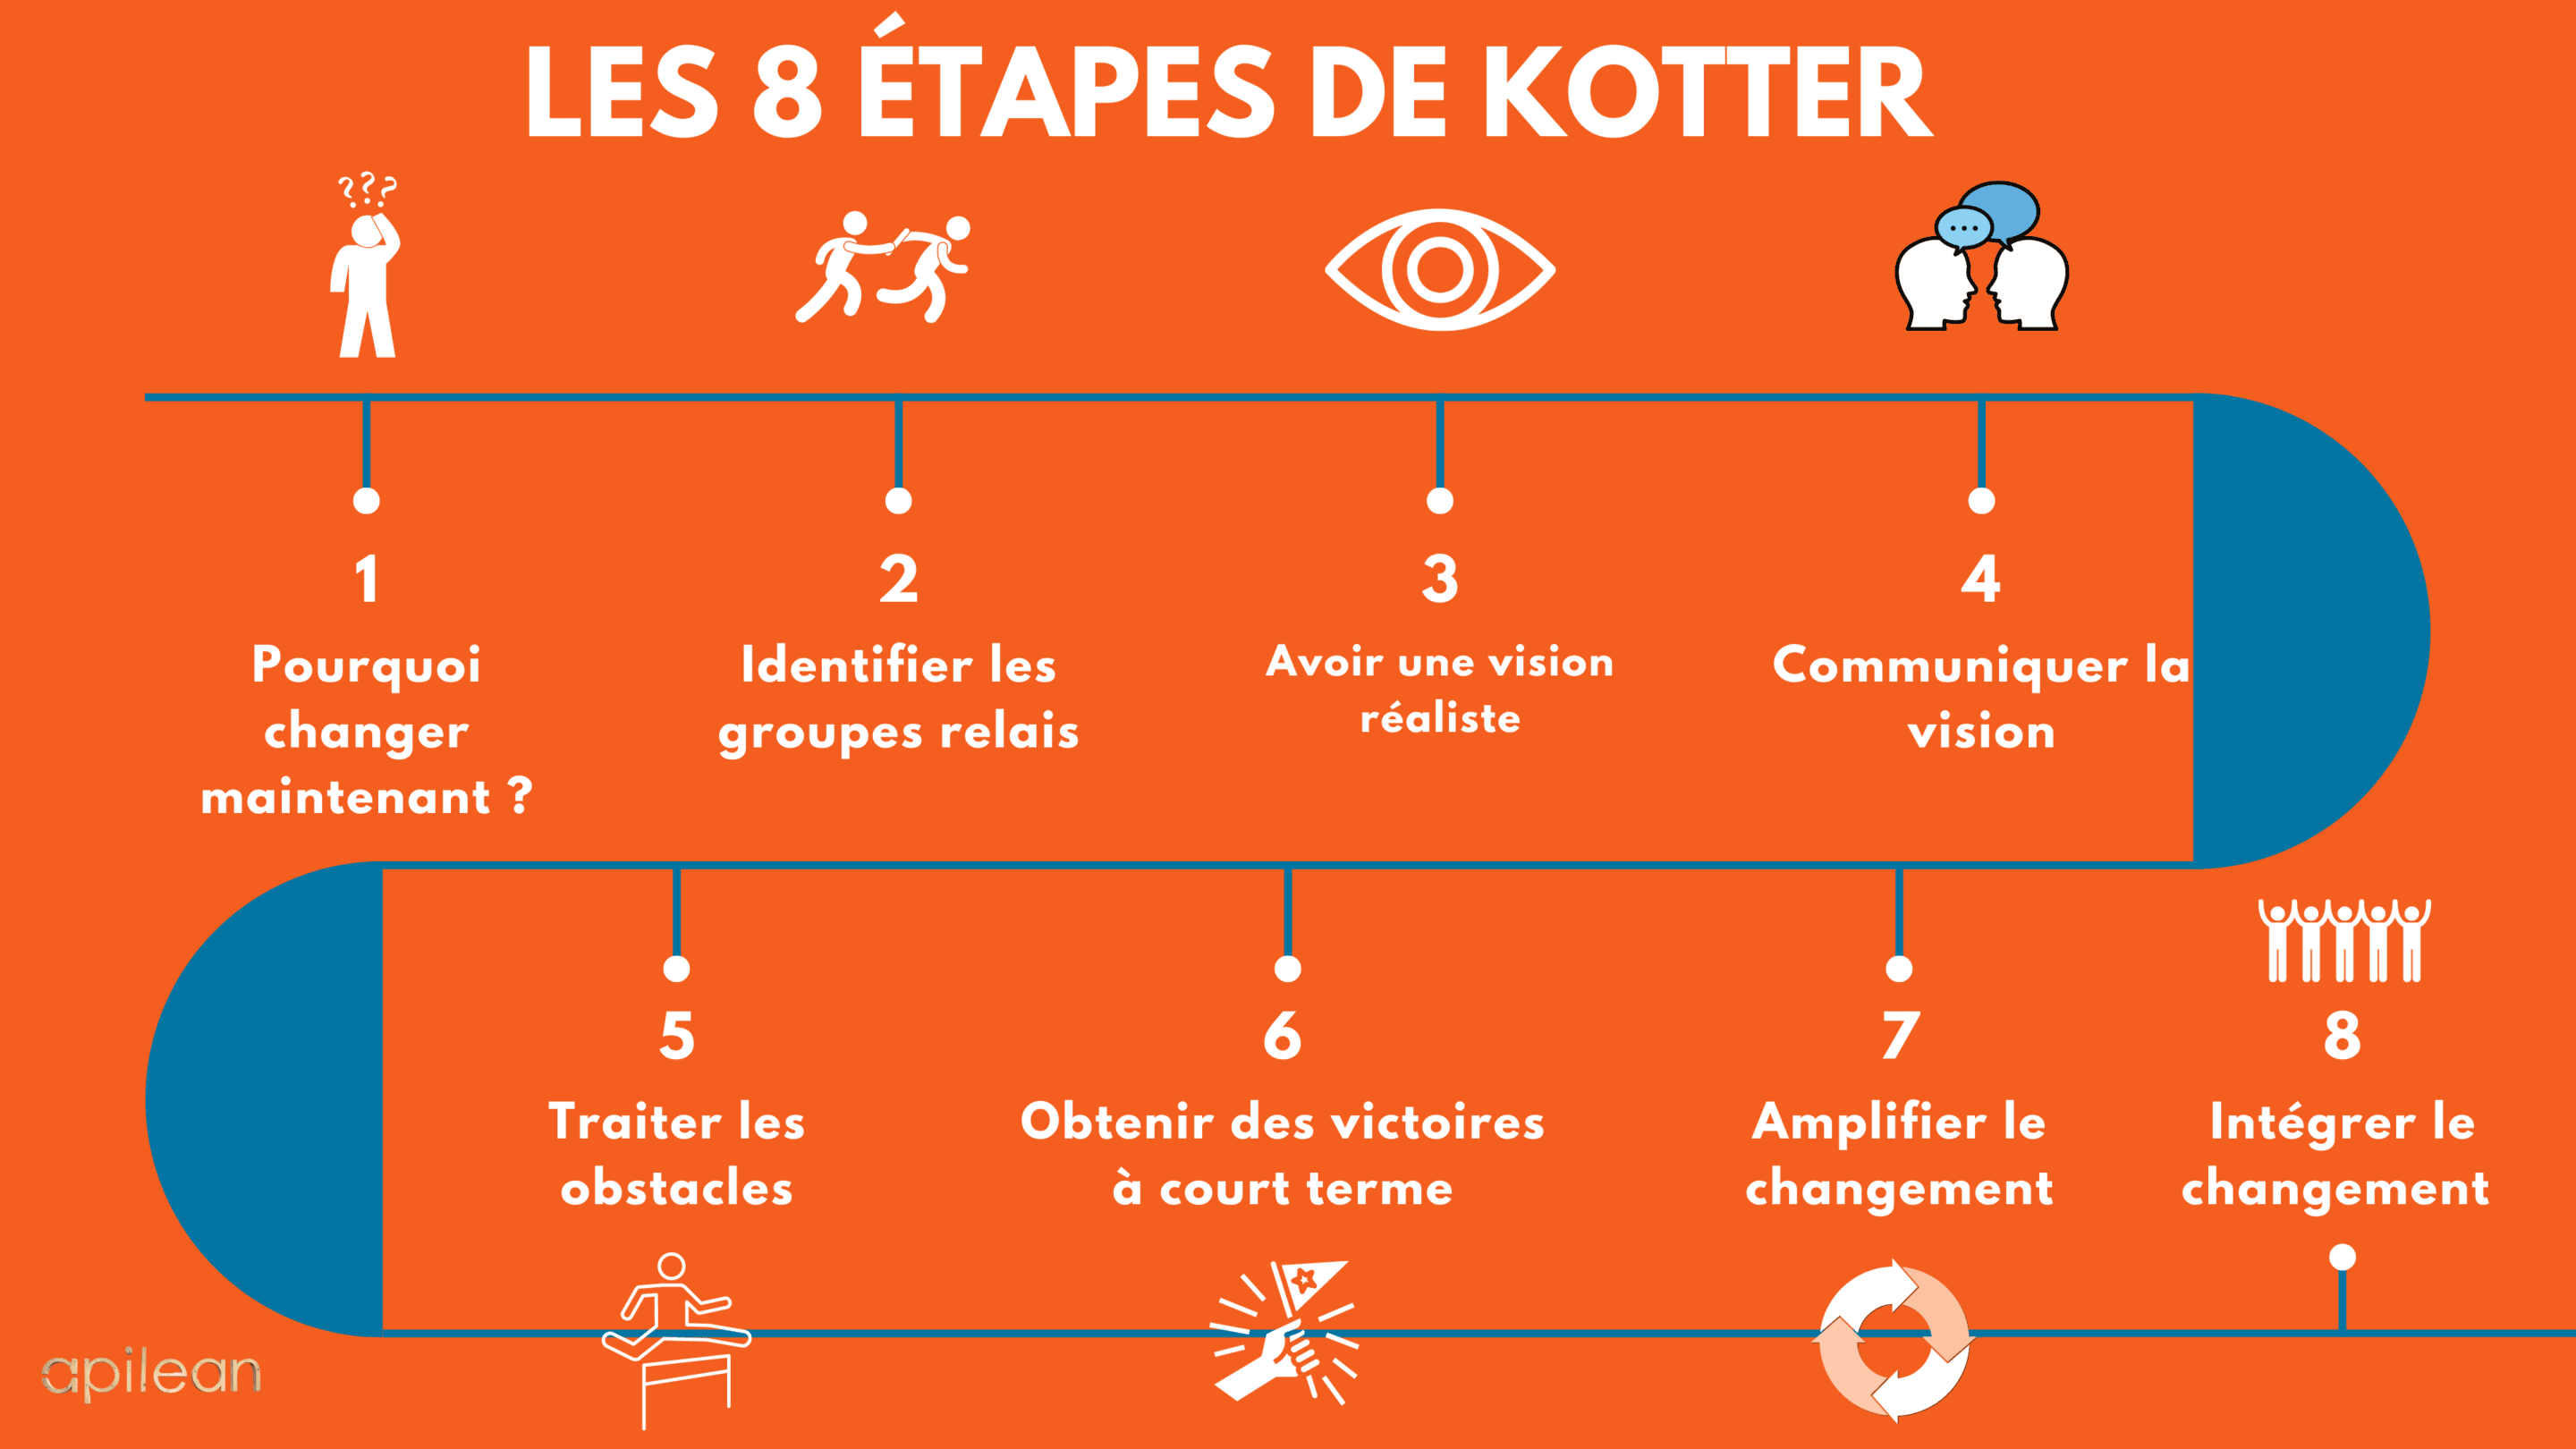 Les 8 étapes de Kotter